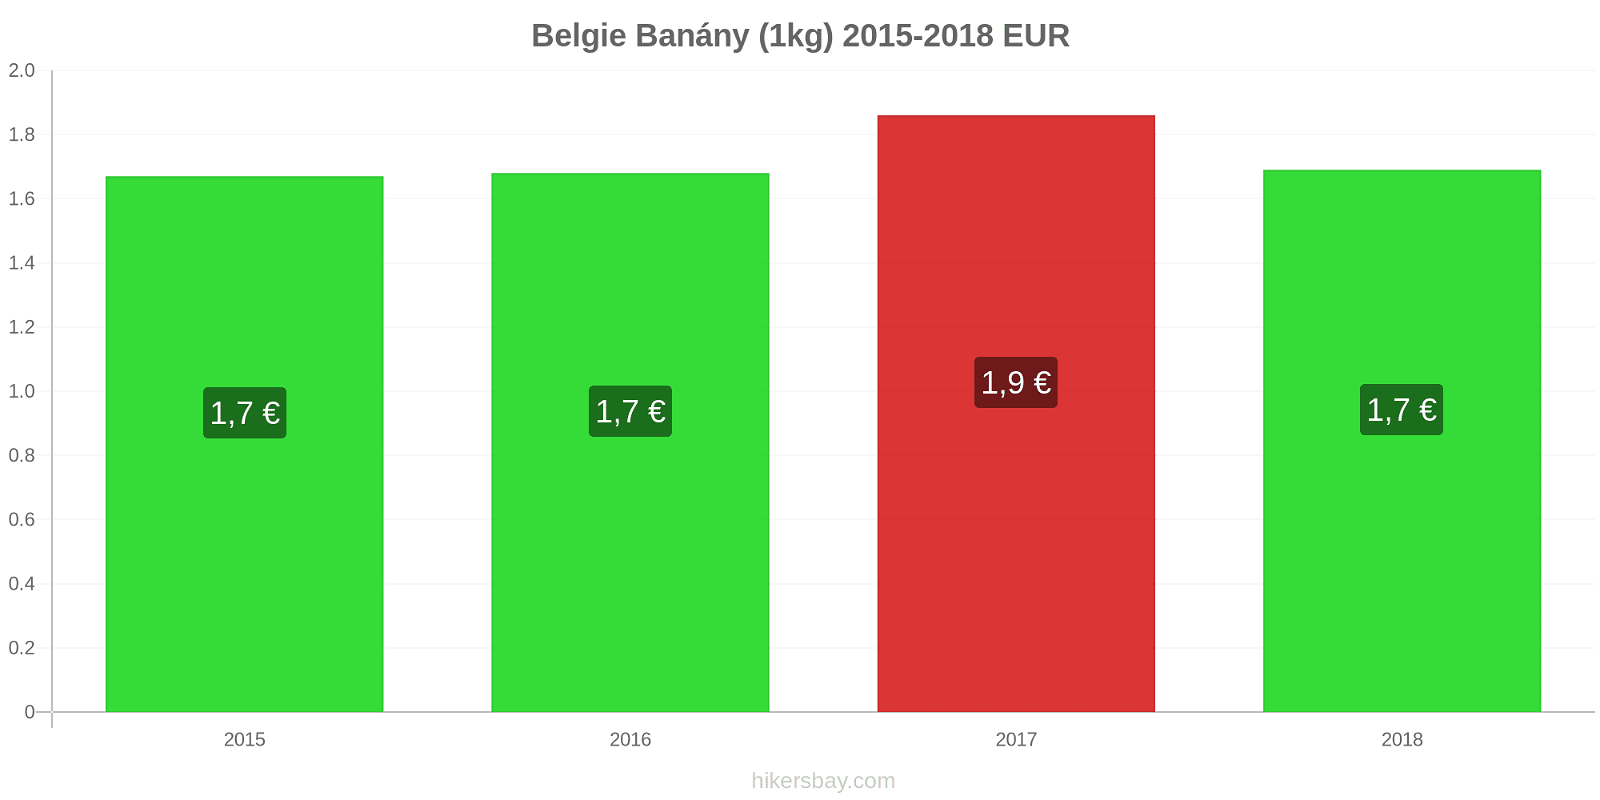 Belgie změny cen Banány (1kg) hikersbay.com